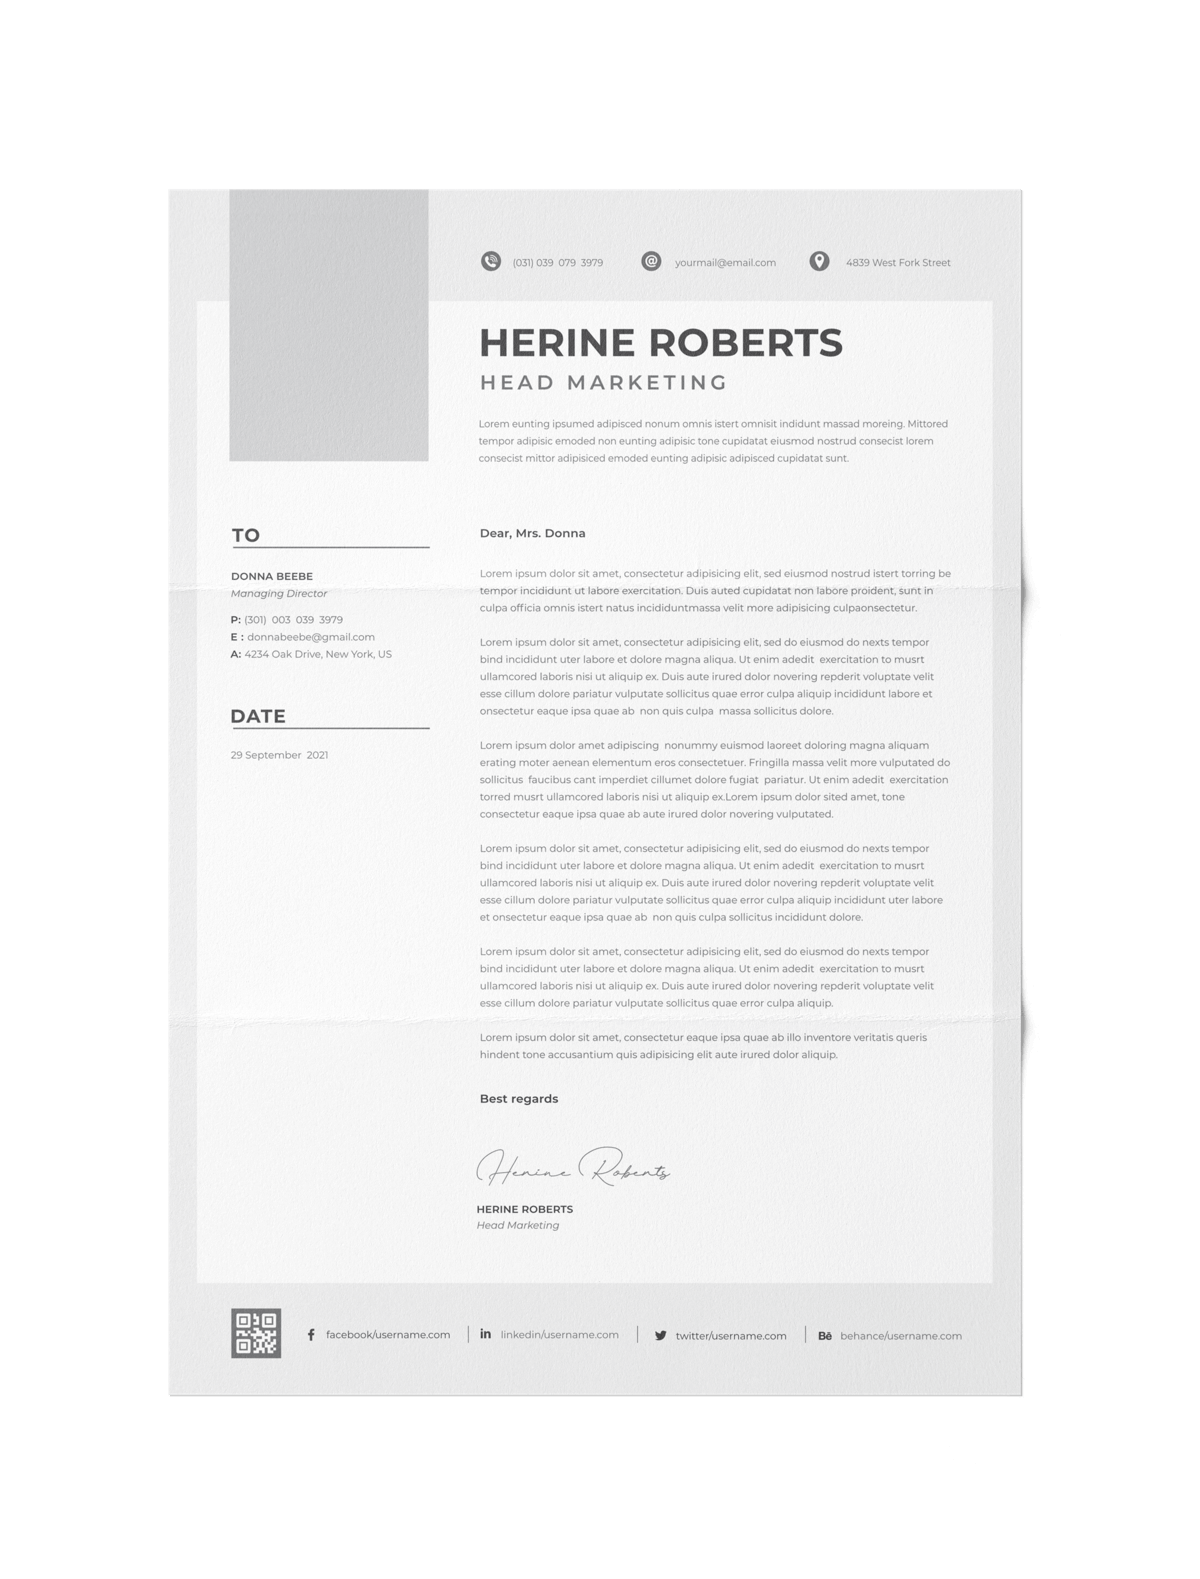 CV #164 Herine Roberts